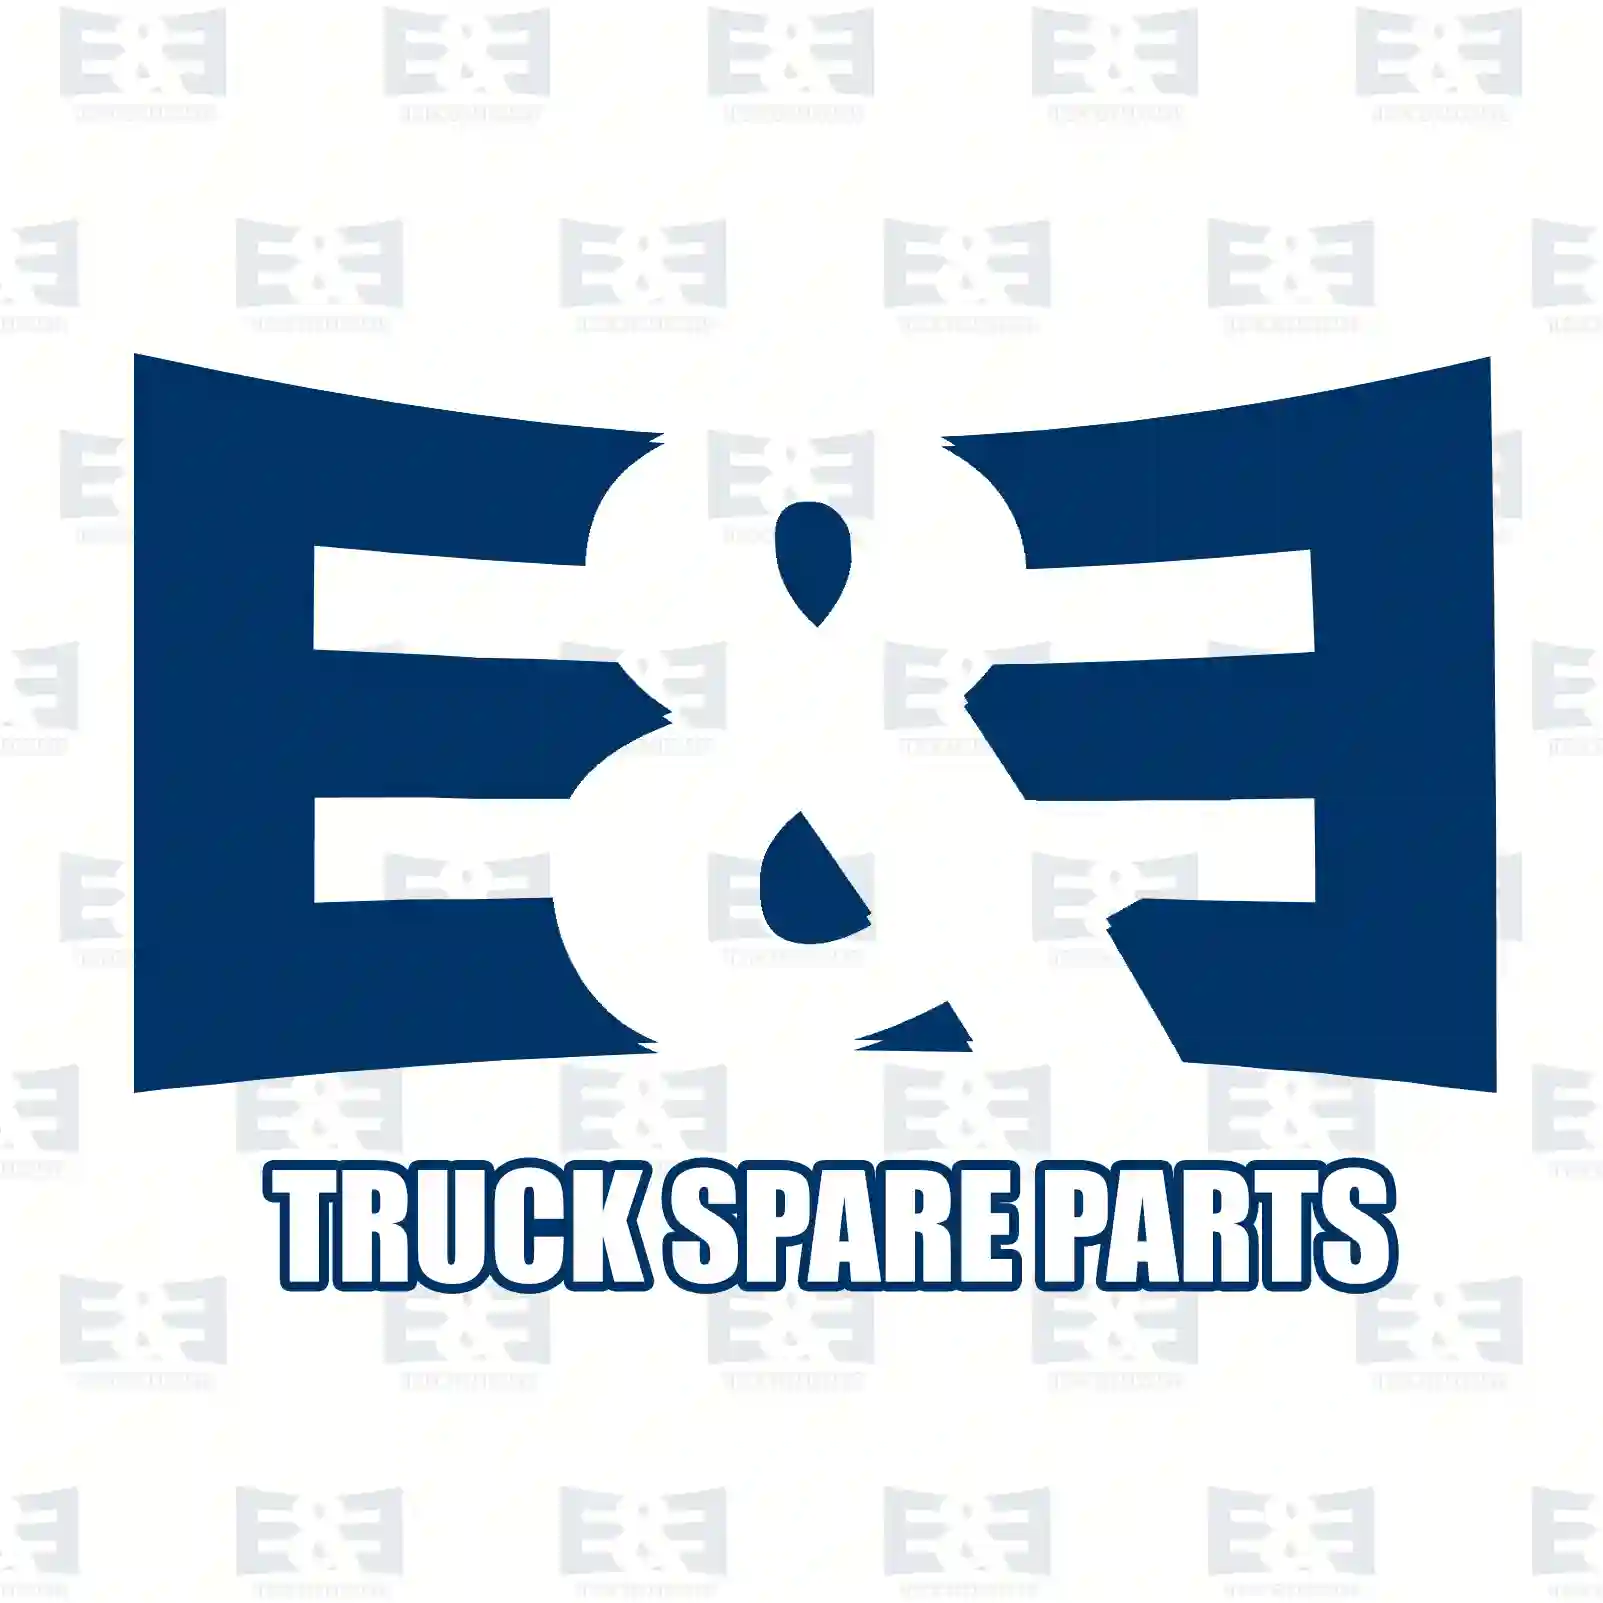 Wheel hub, 2E2284057, 330788, 51750868, 330788 ||  2E2284057 E&E Truck Spare Parts | Truck Spare Parts, Auotomotive Spare Parts Wheel hub, 2E2284057, 330788, 51750868, 330788 ||  2E2284057 E&E Truck Spare Parts | Truck Spare Parts, Auotomotive Spare Parts